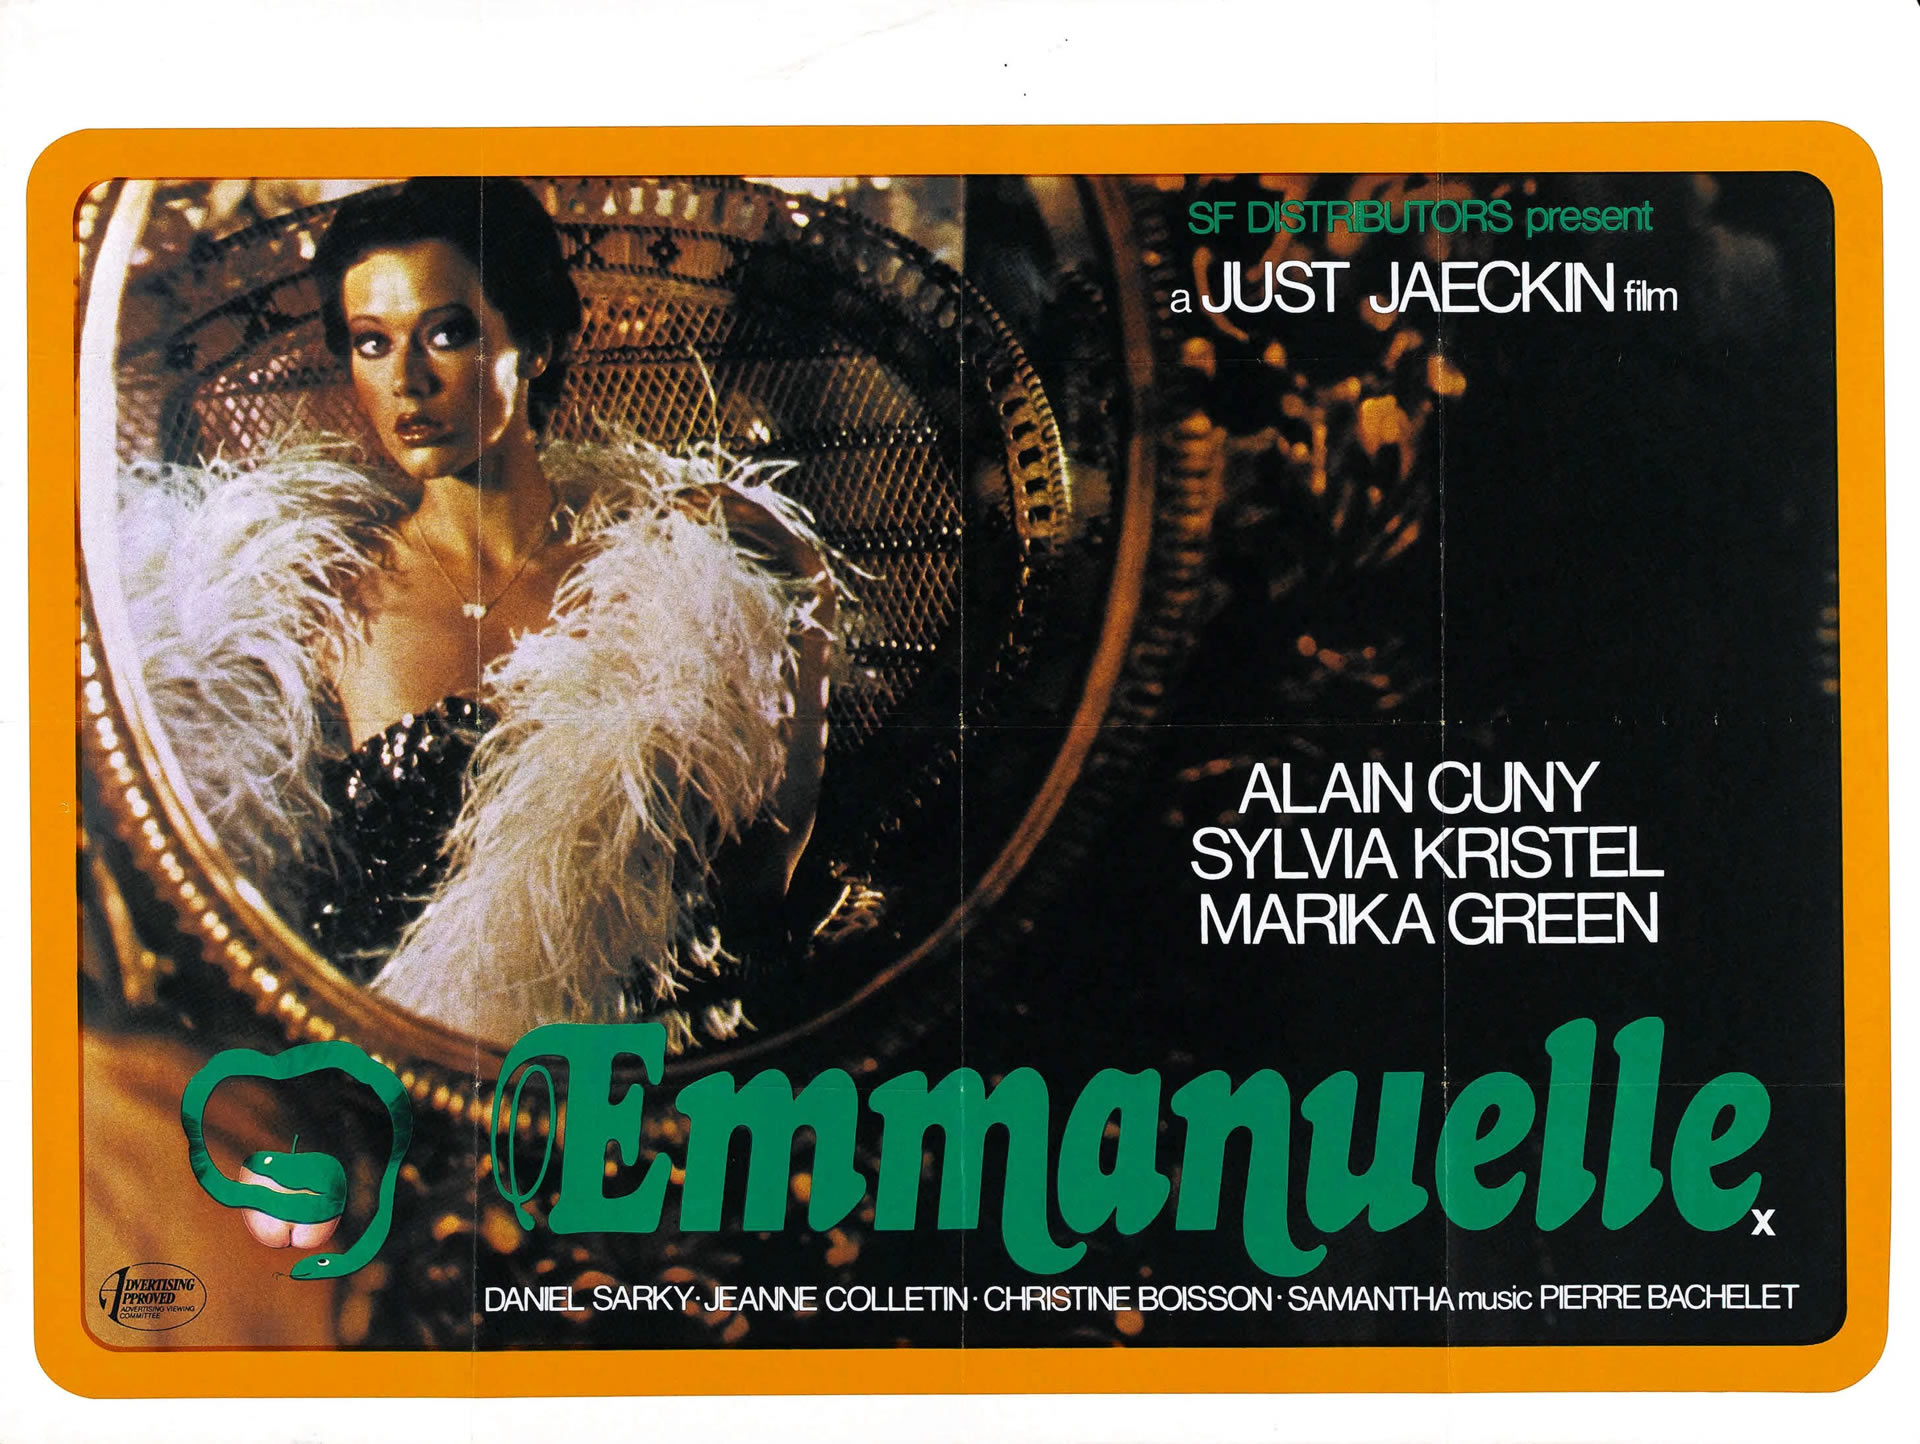 Emmanuelle 2 Full Movie